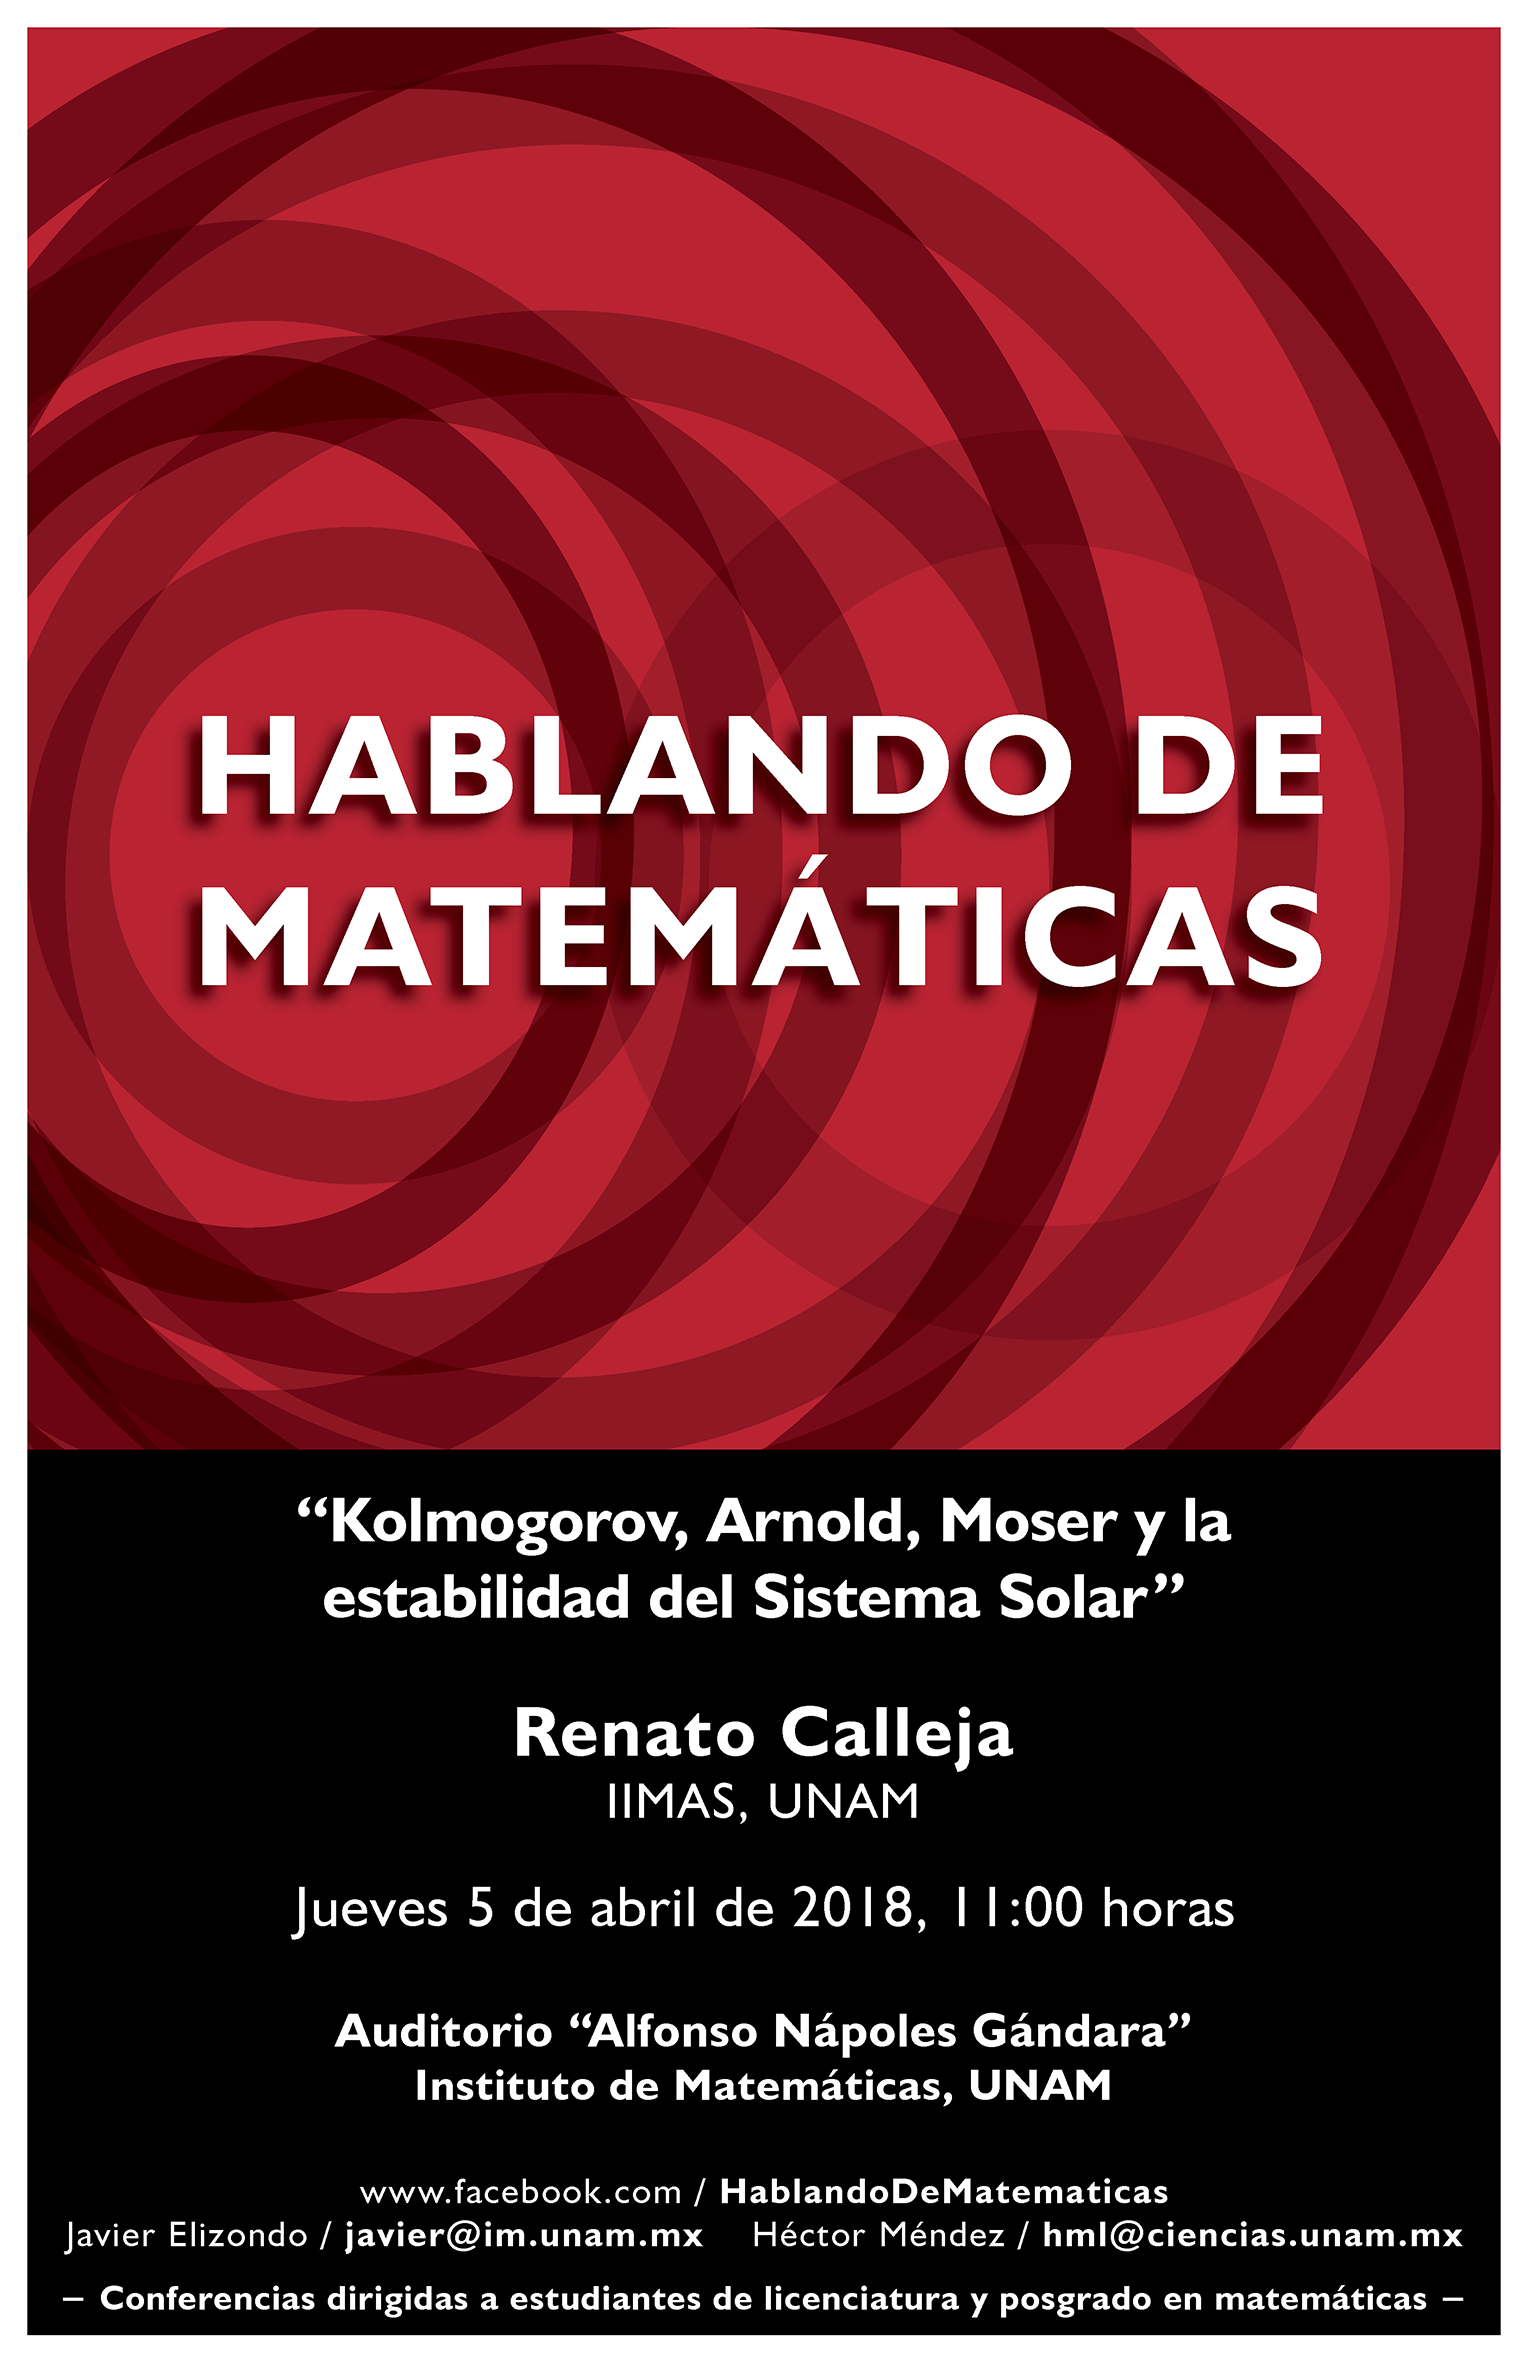 Hablando de Matemáticas: Renato Calleja, IIMAS, UNAM